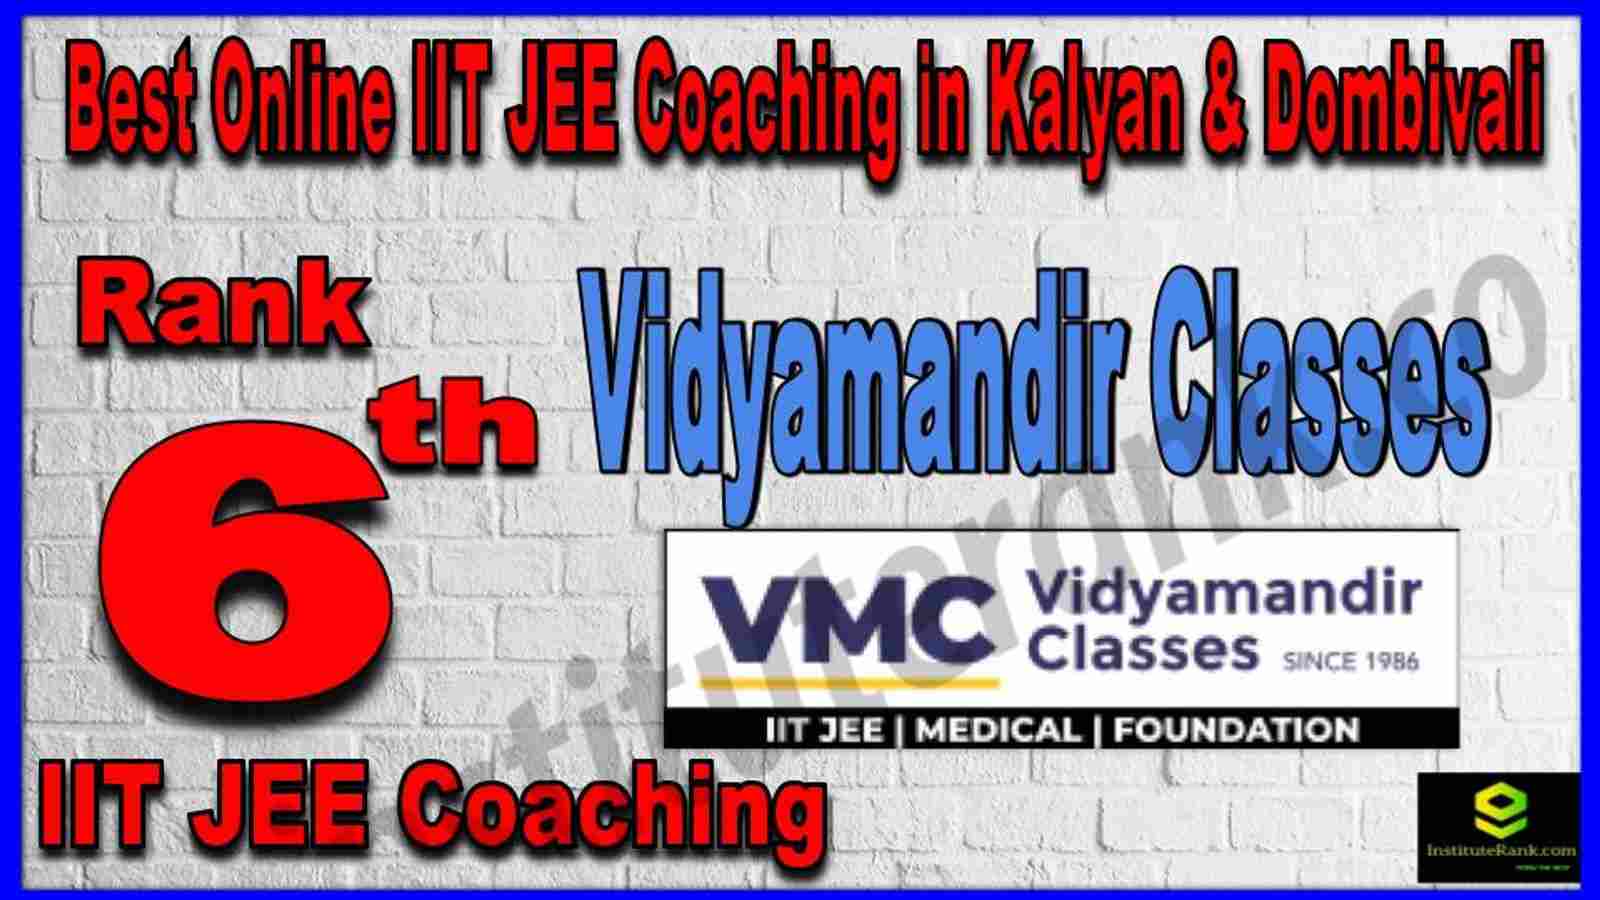 Rank 6th Best Online IIT JEE Coaching in Kalyan & Dombivali 